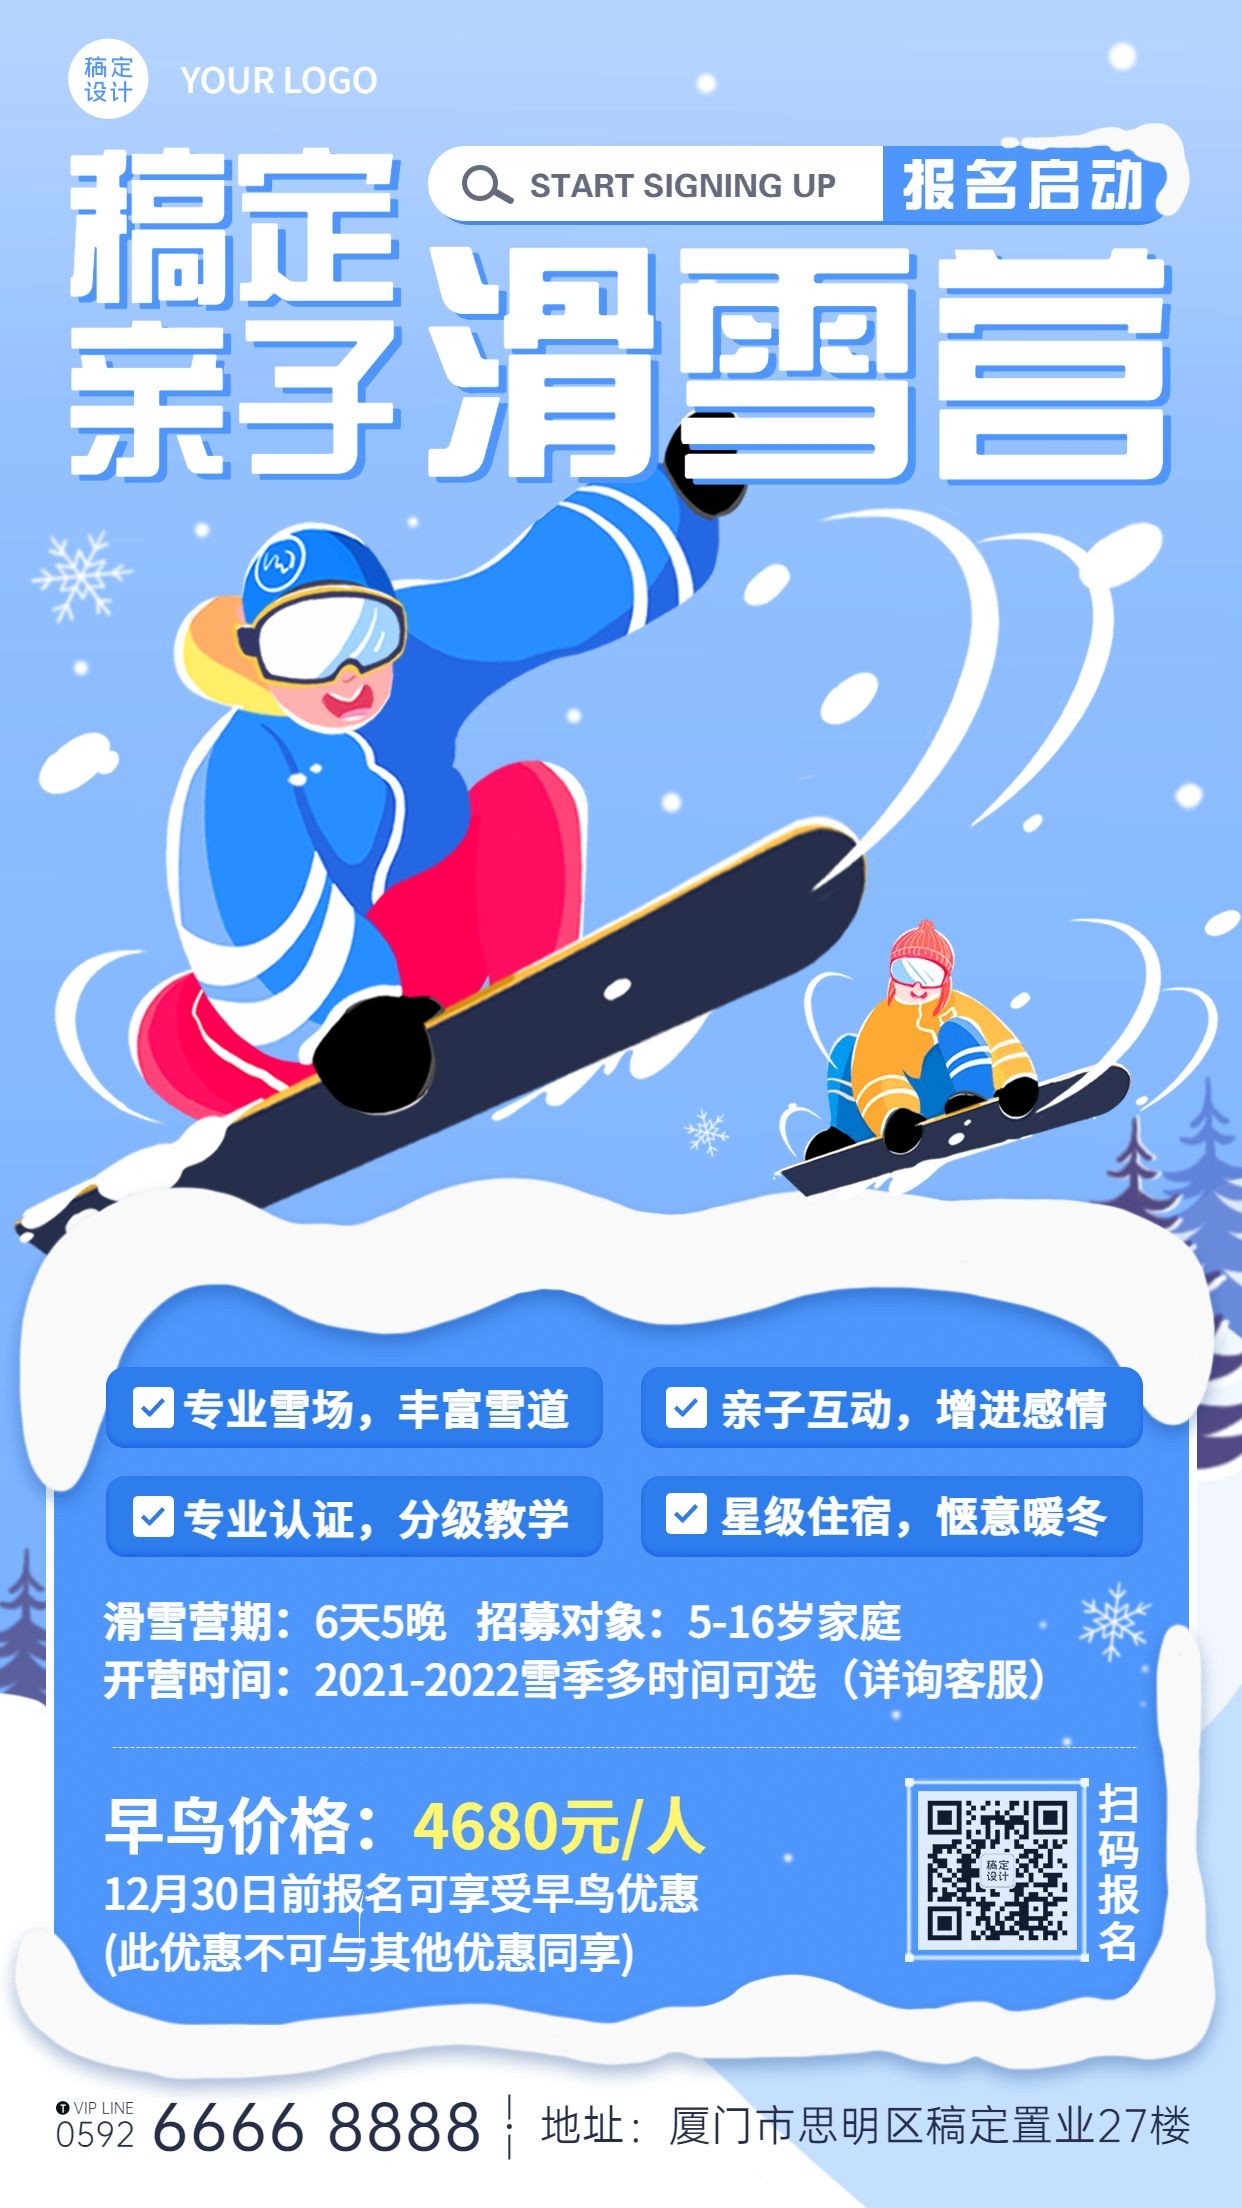 亲子滑雪冬令营课程招生竖版海报